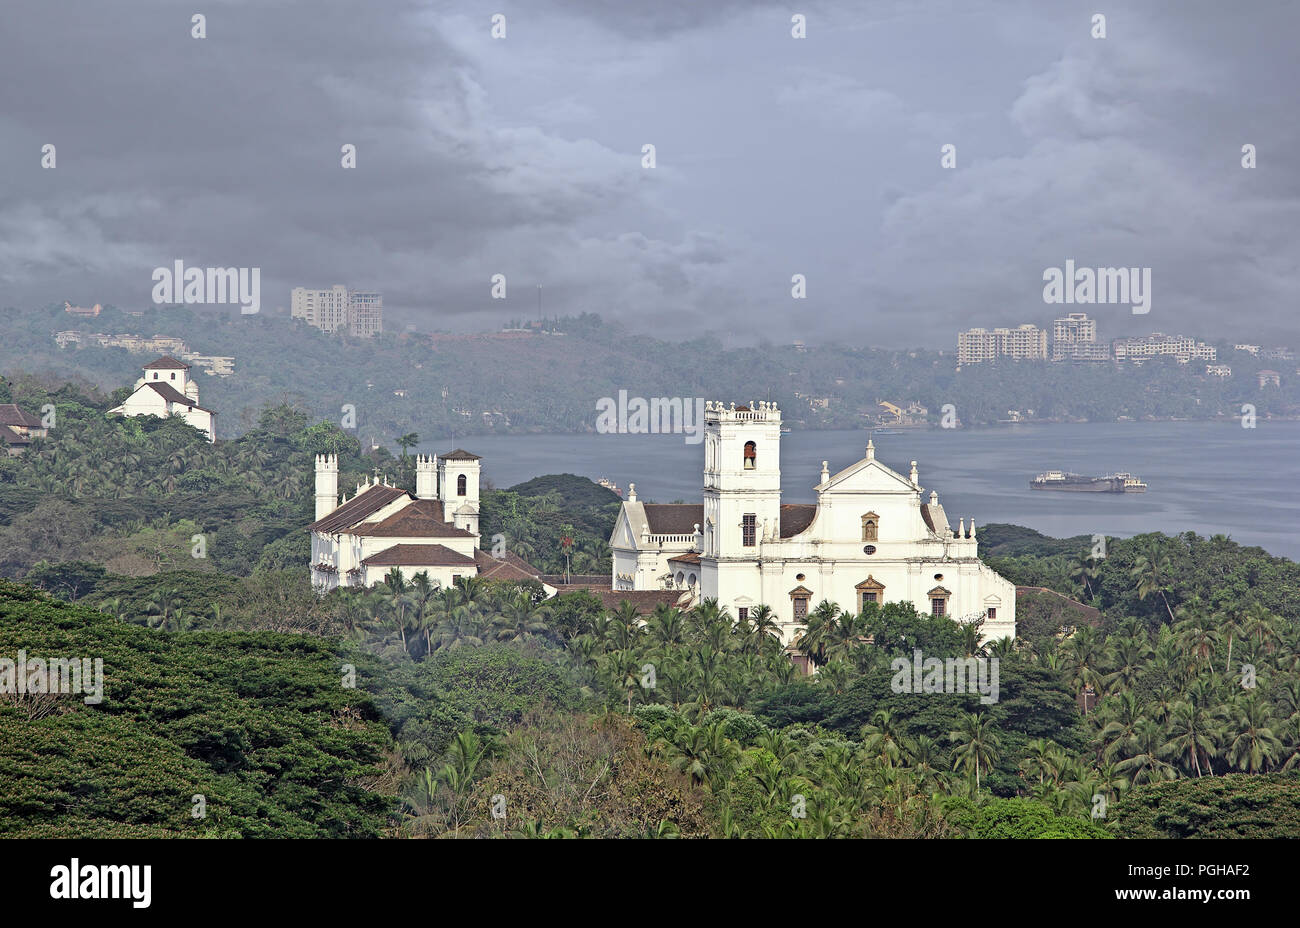 Cathédrale Se historique, St Catherine's cathédrale, vue de la colline de Monte forme à Old Goa, Inde. Construit par les Portugais au 16e siècle. Banque D'Images